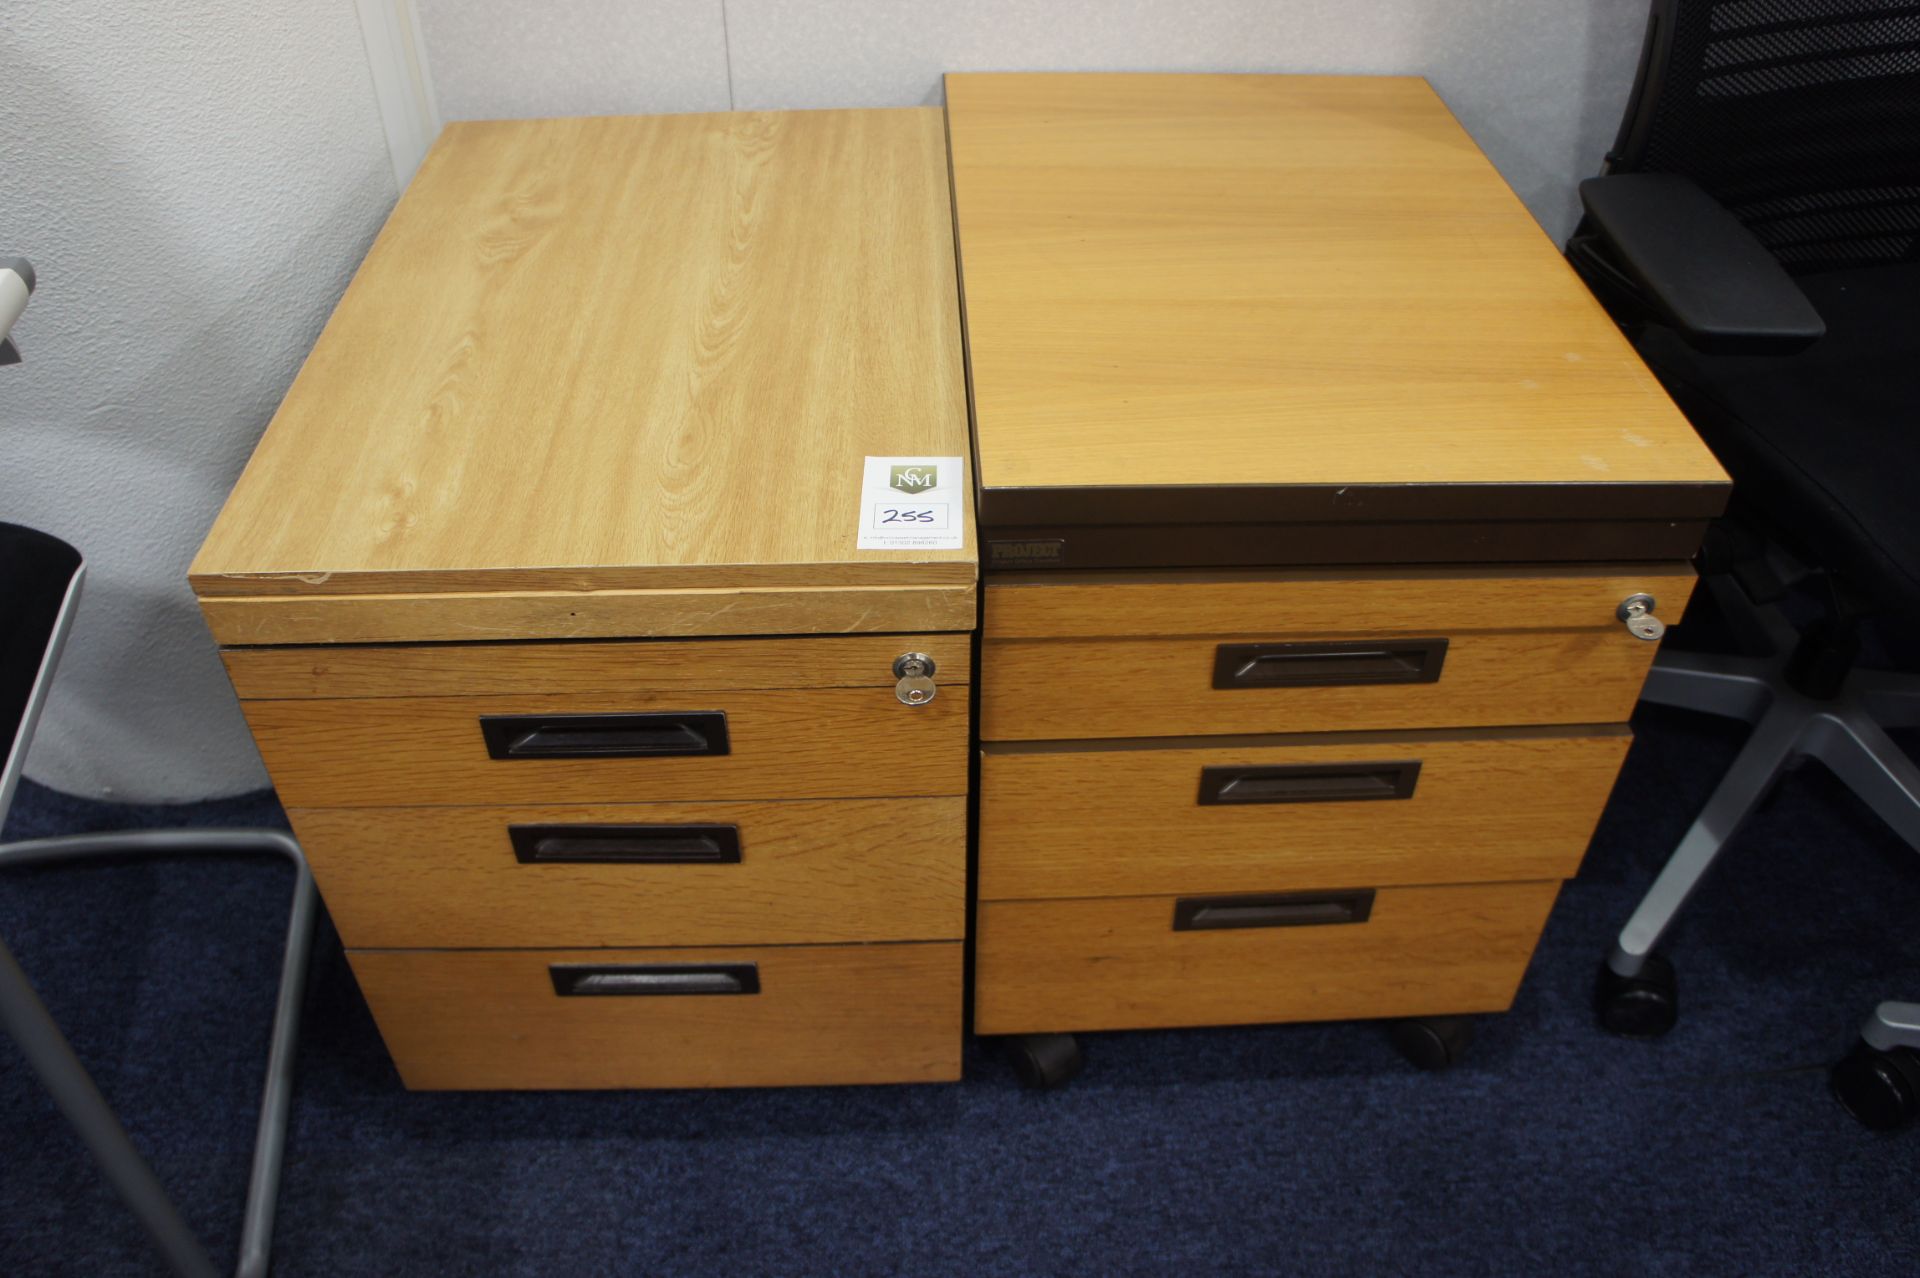 2 x 3 drawer pedestals